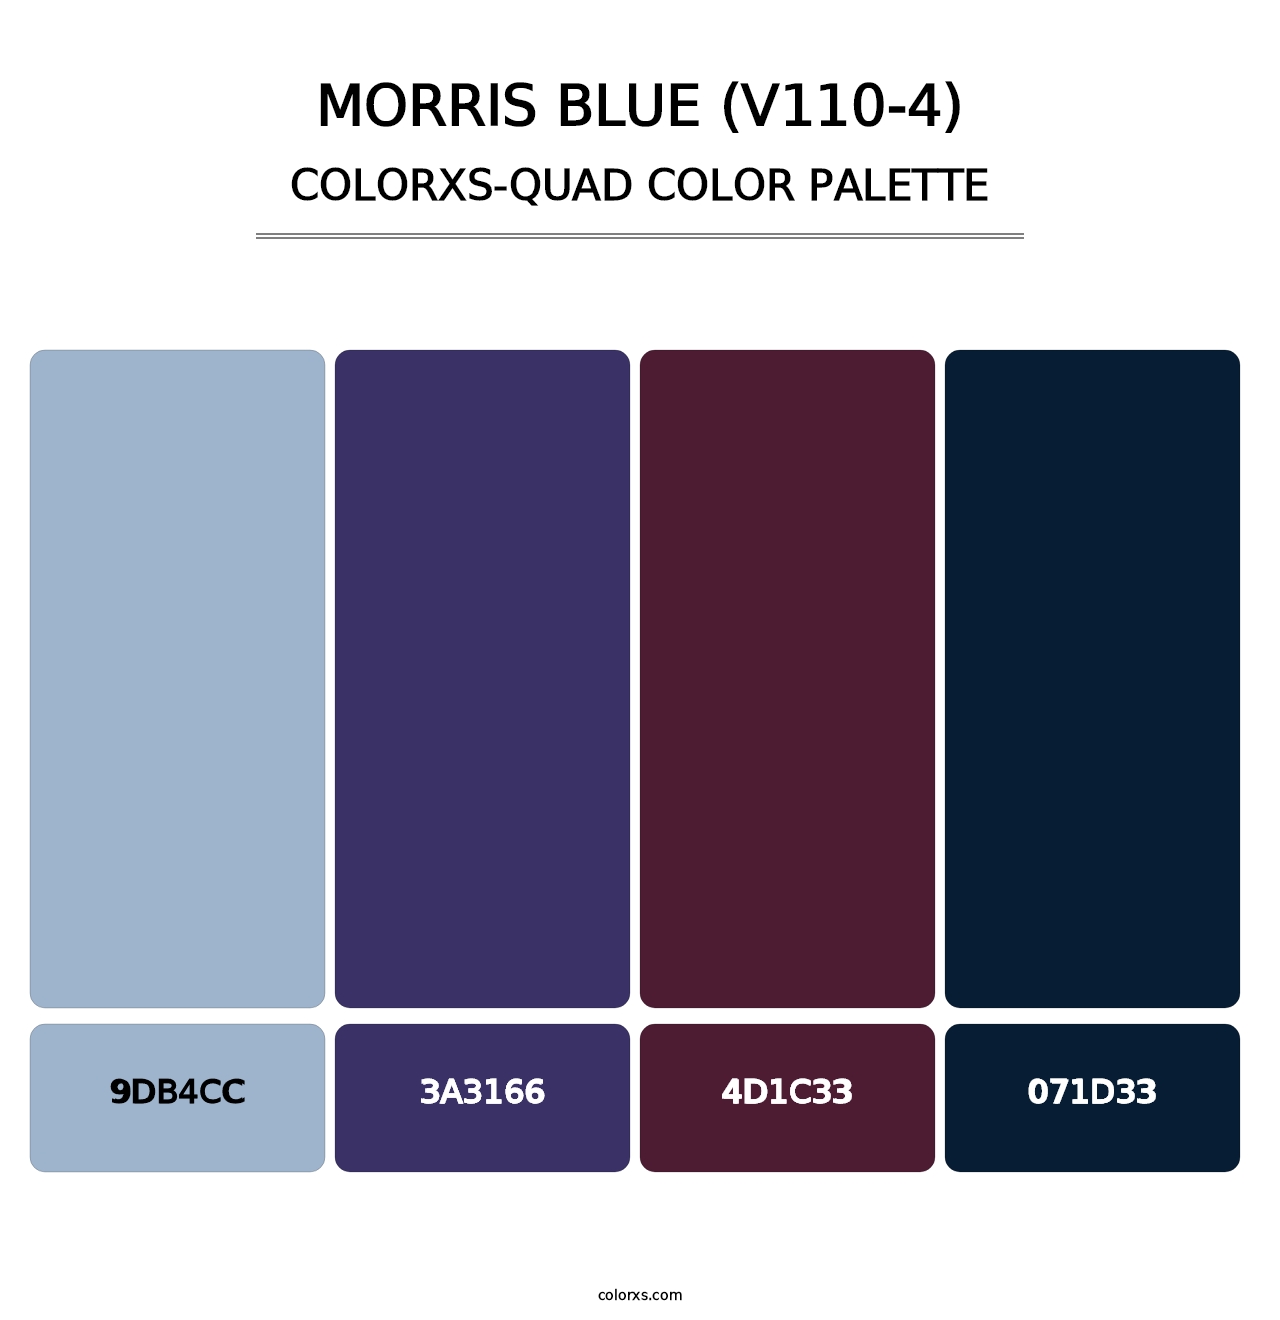 Morris Blue (V110-4) - Colorxs Quad Palette